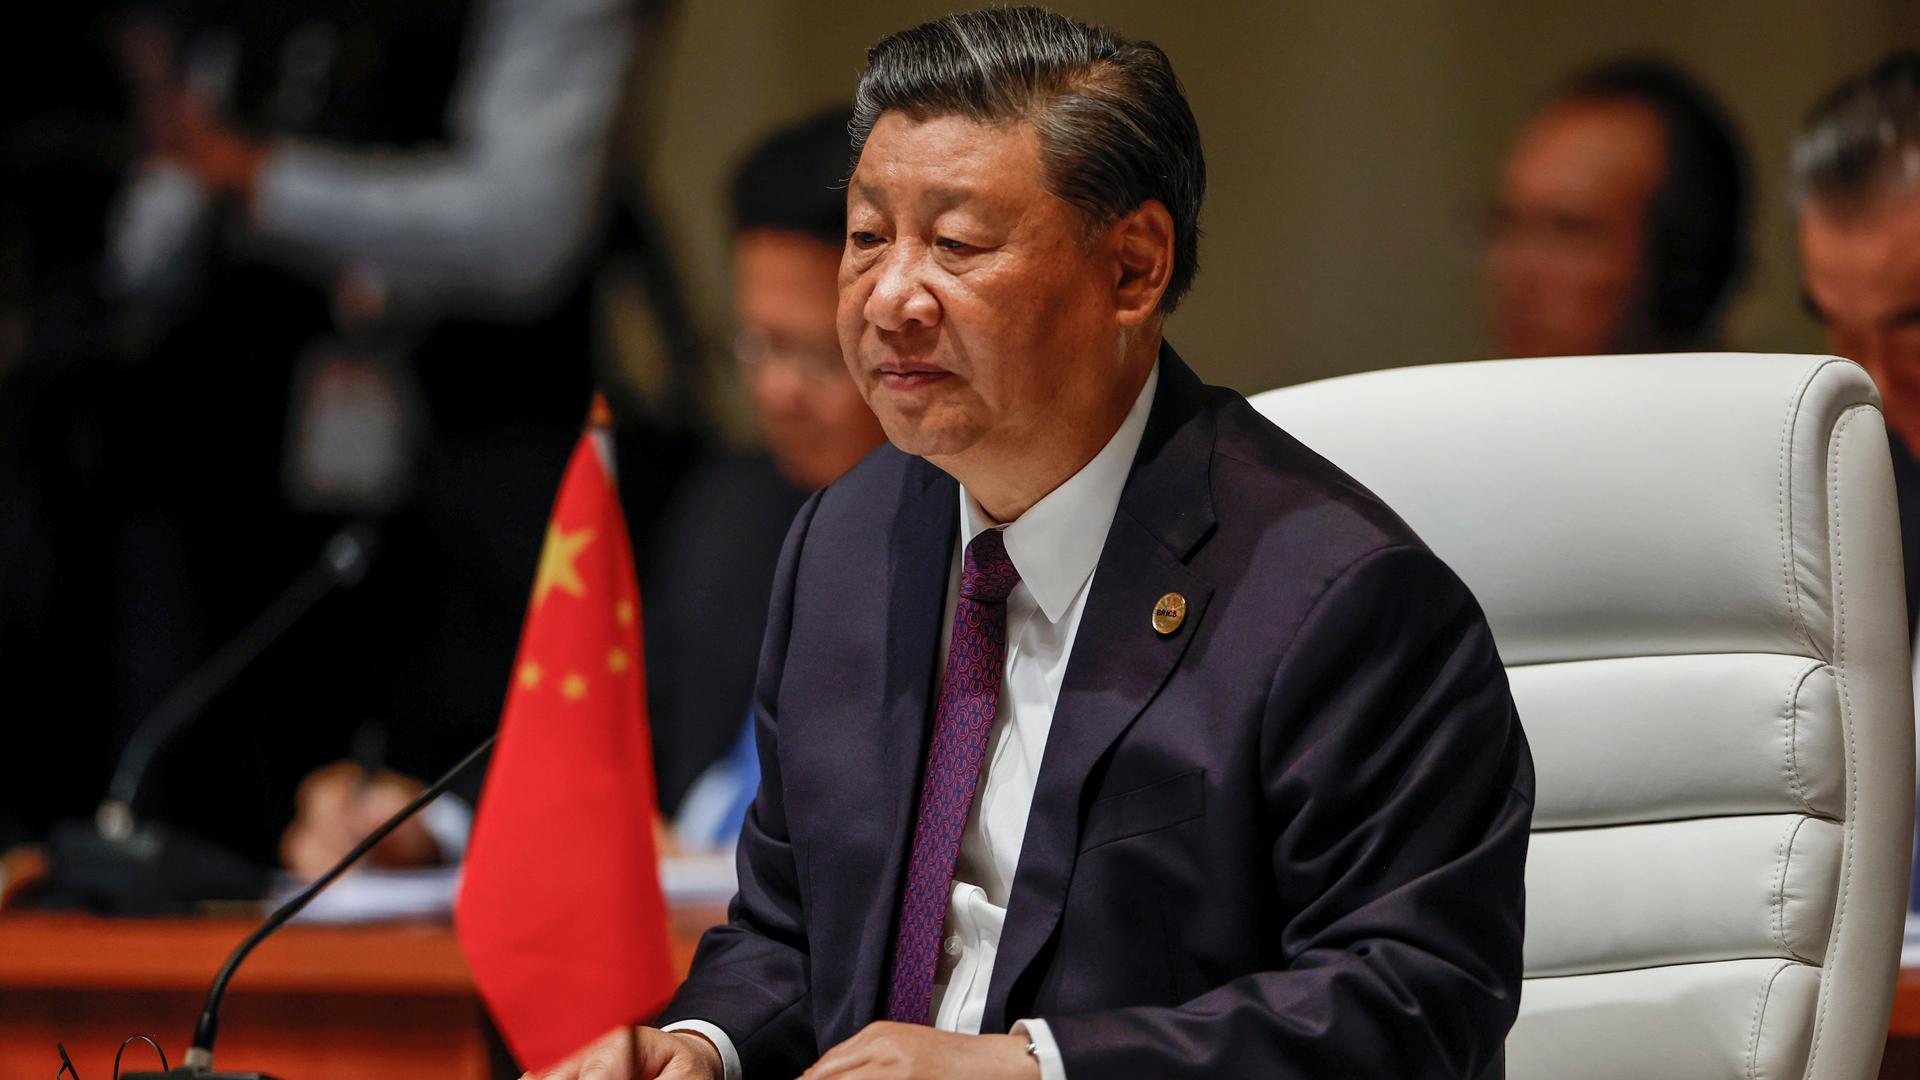 Chinas Präsident Xi Jinping spricht beim Gipfeltreffen der Brics-Gruppe in Johannesburg.